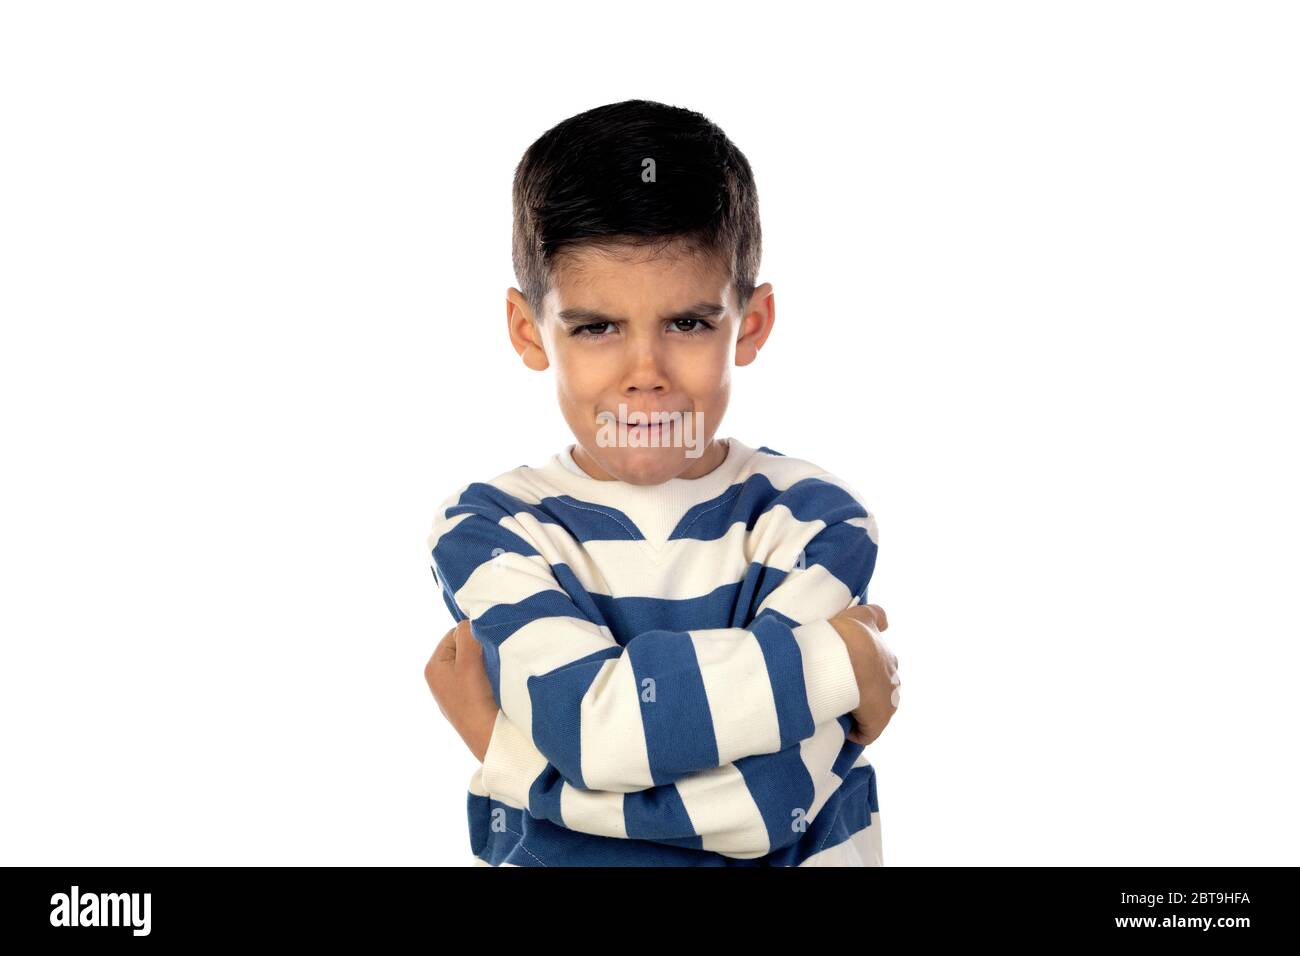 Sad latin child isolated on a white background Stock Photo